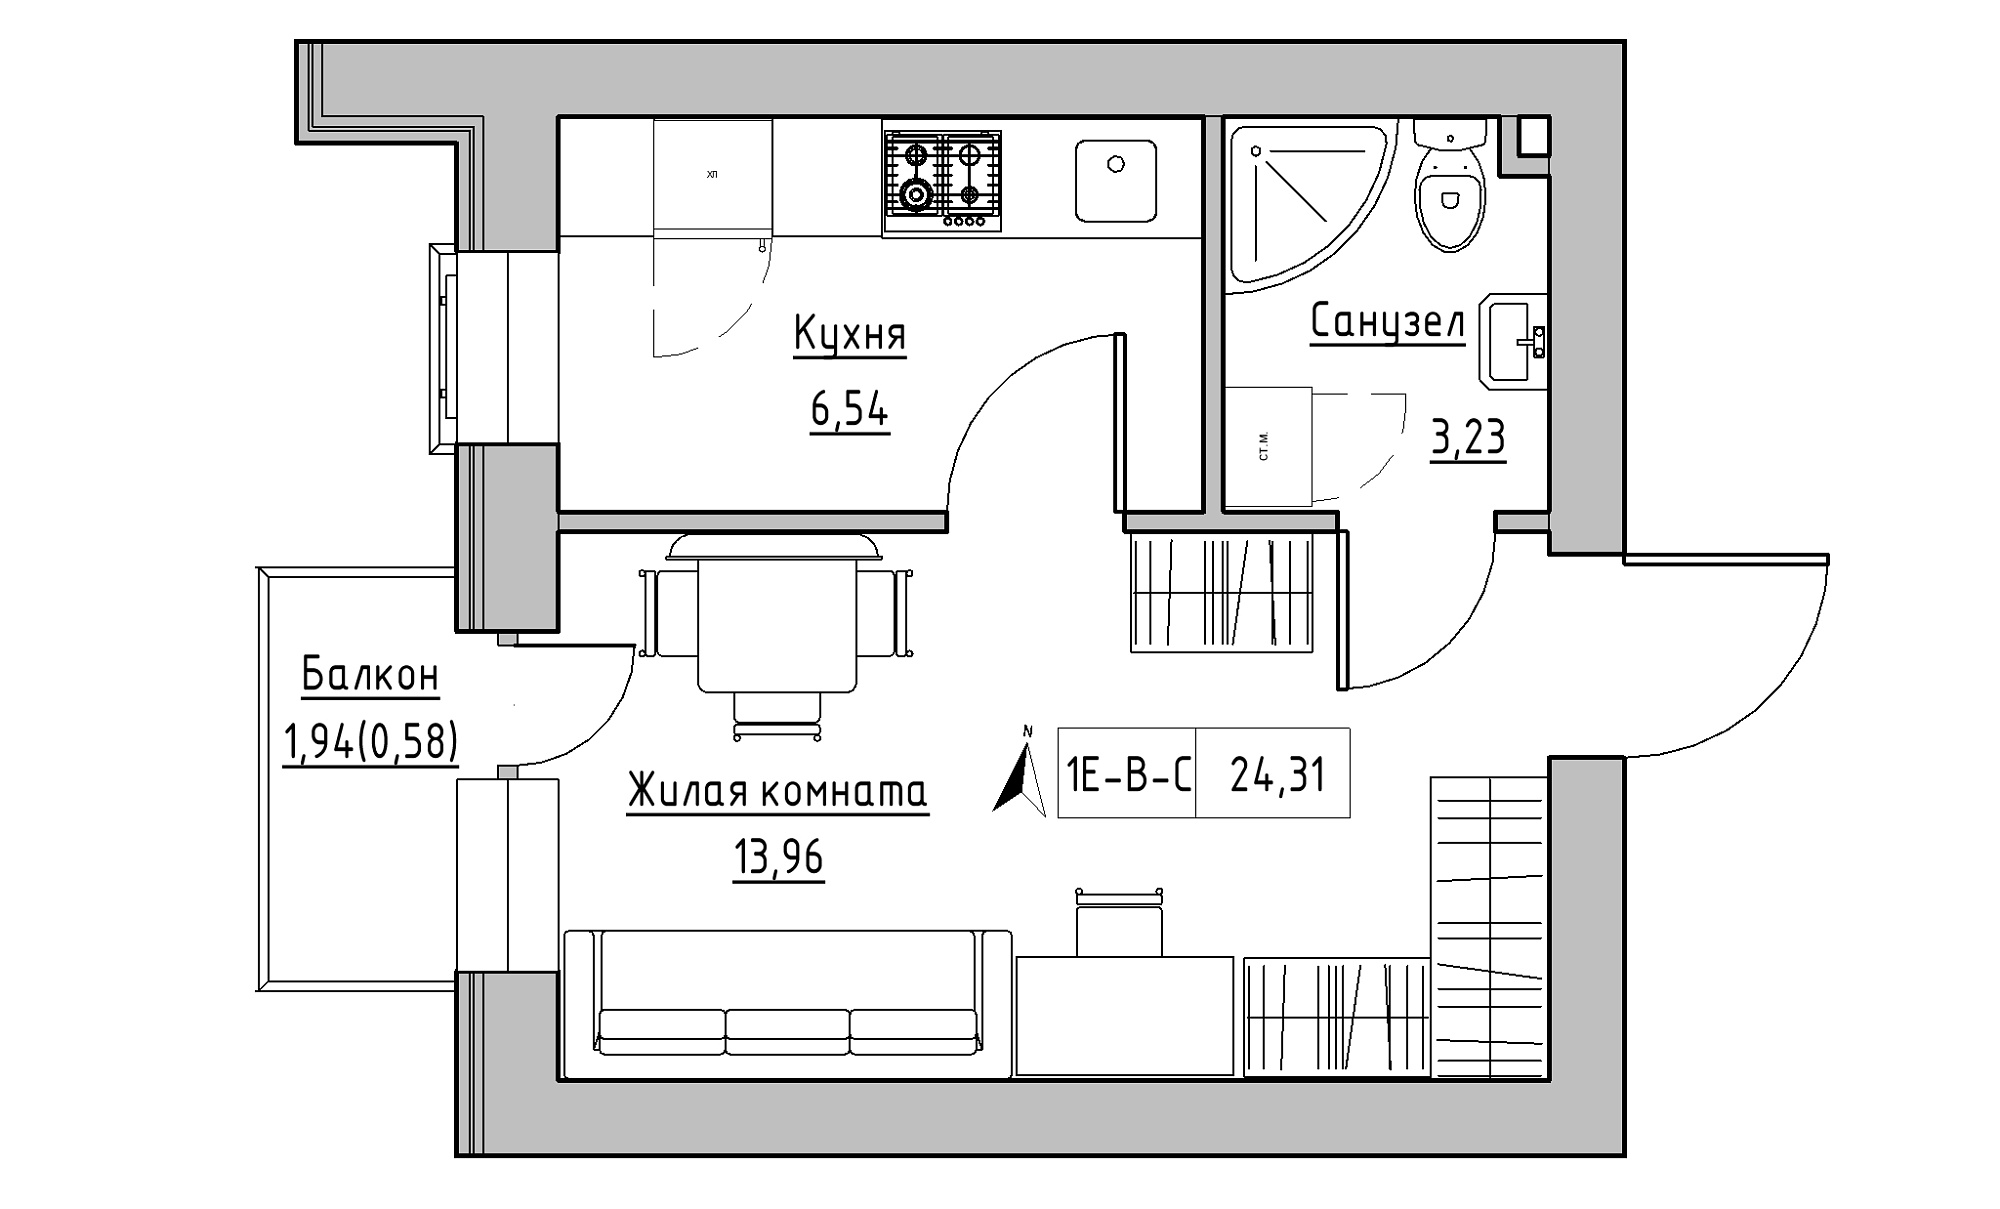 Планировка 1-к квартира площей 24.31м2, KS-016-03/0009.